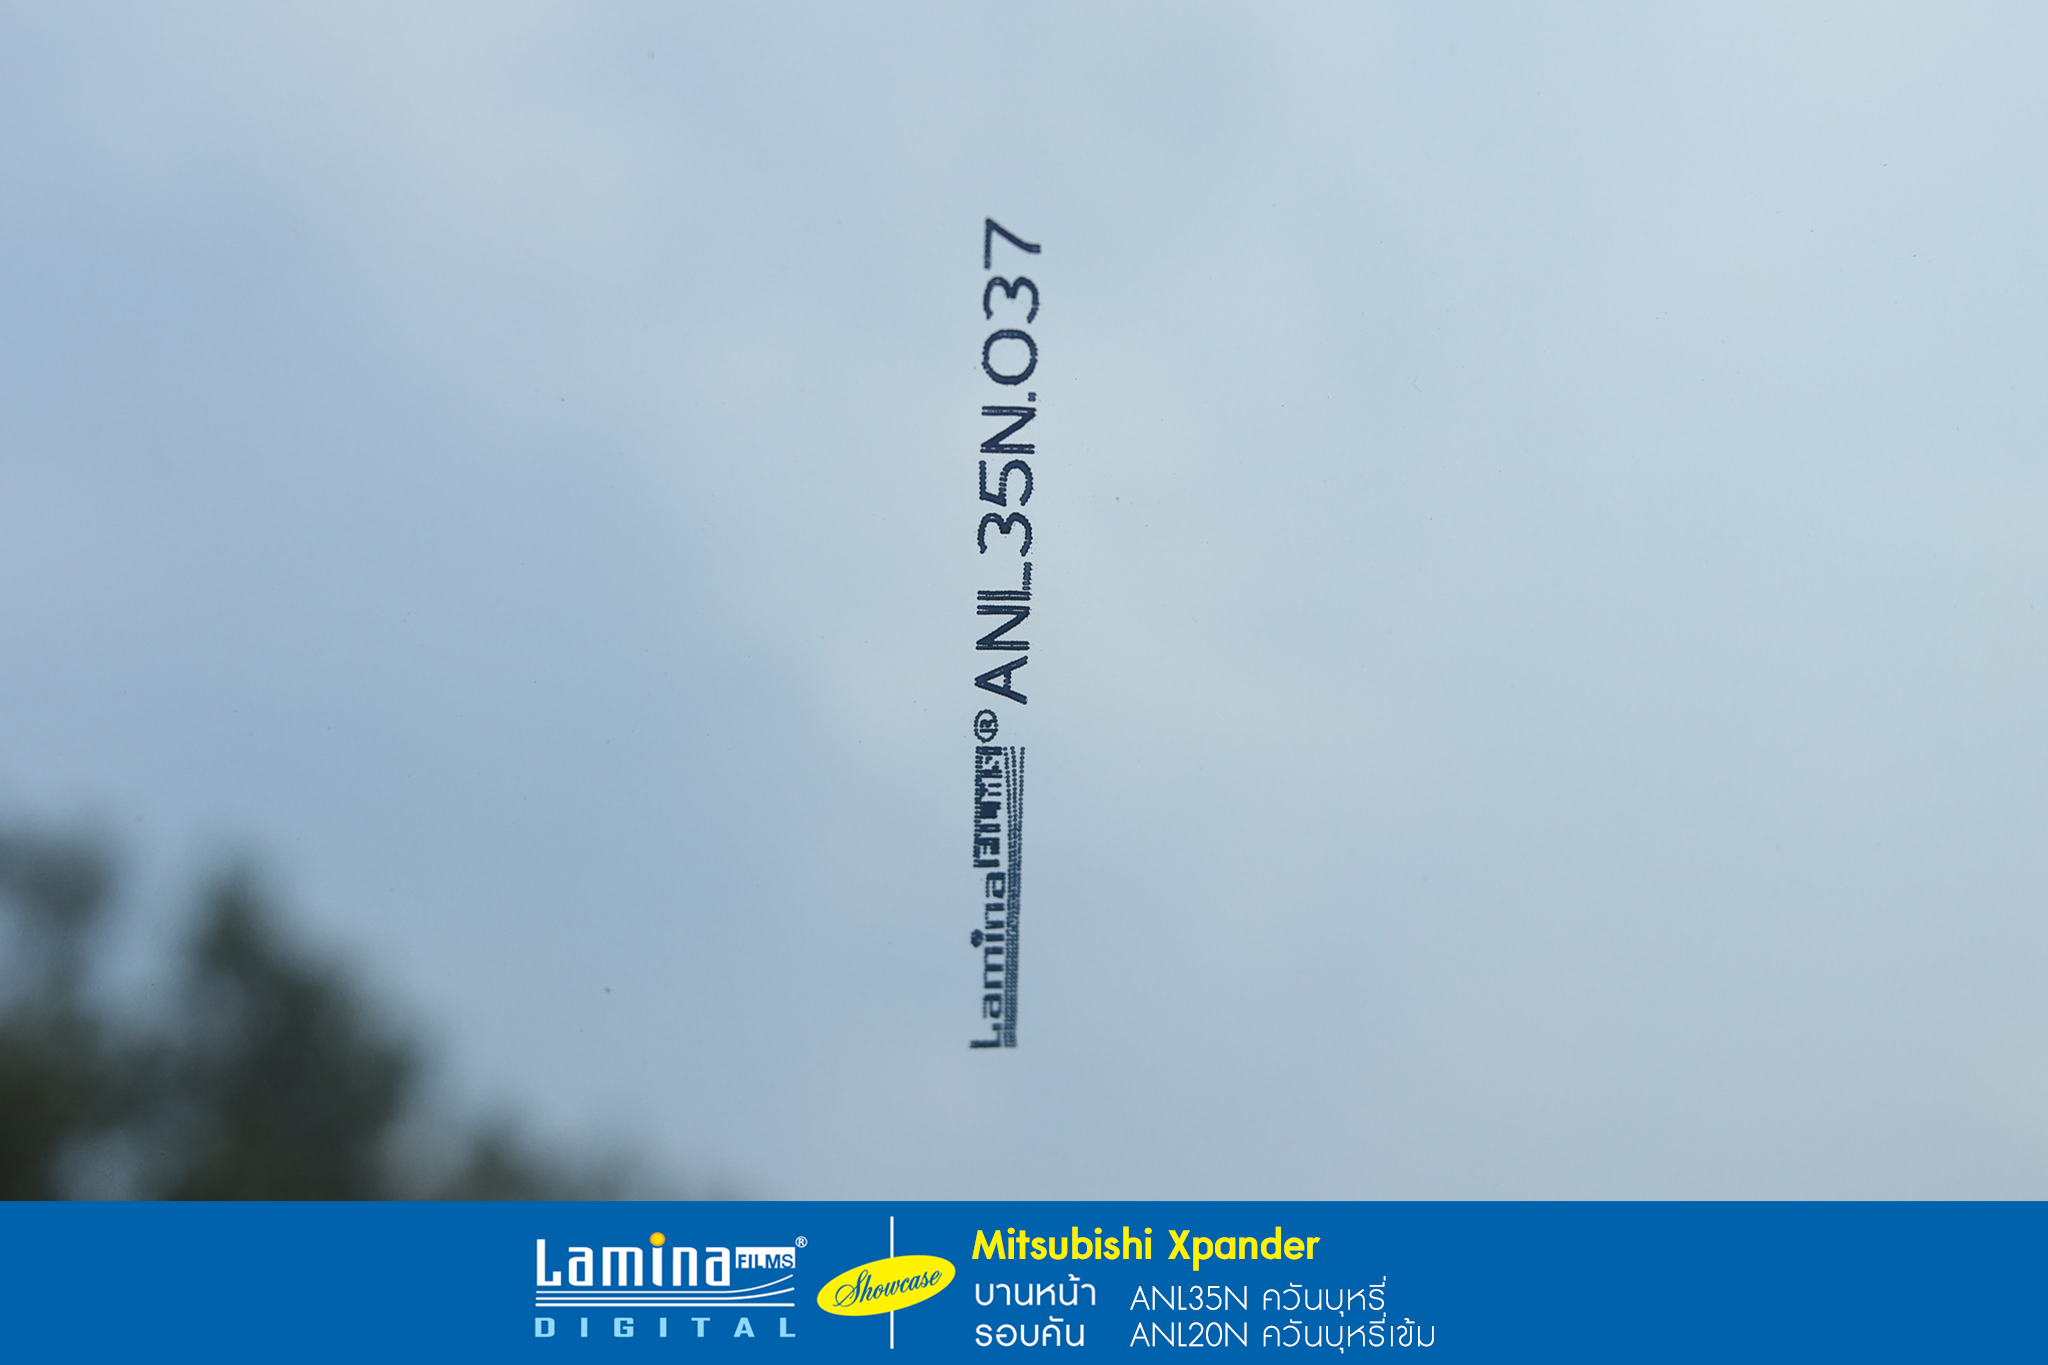 ฟิล์มปรอท lamina genius series Mitsubishi Xpander 7